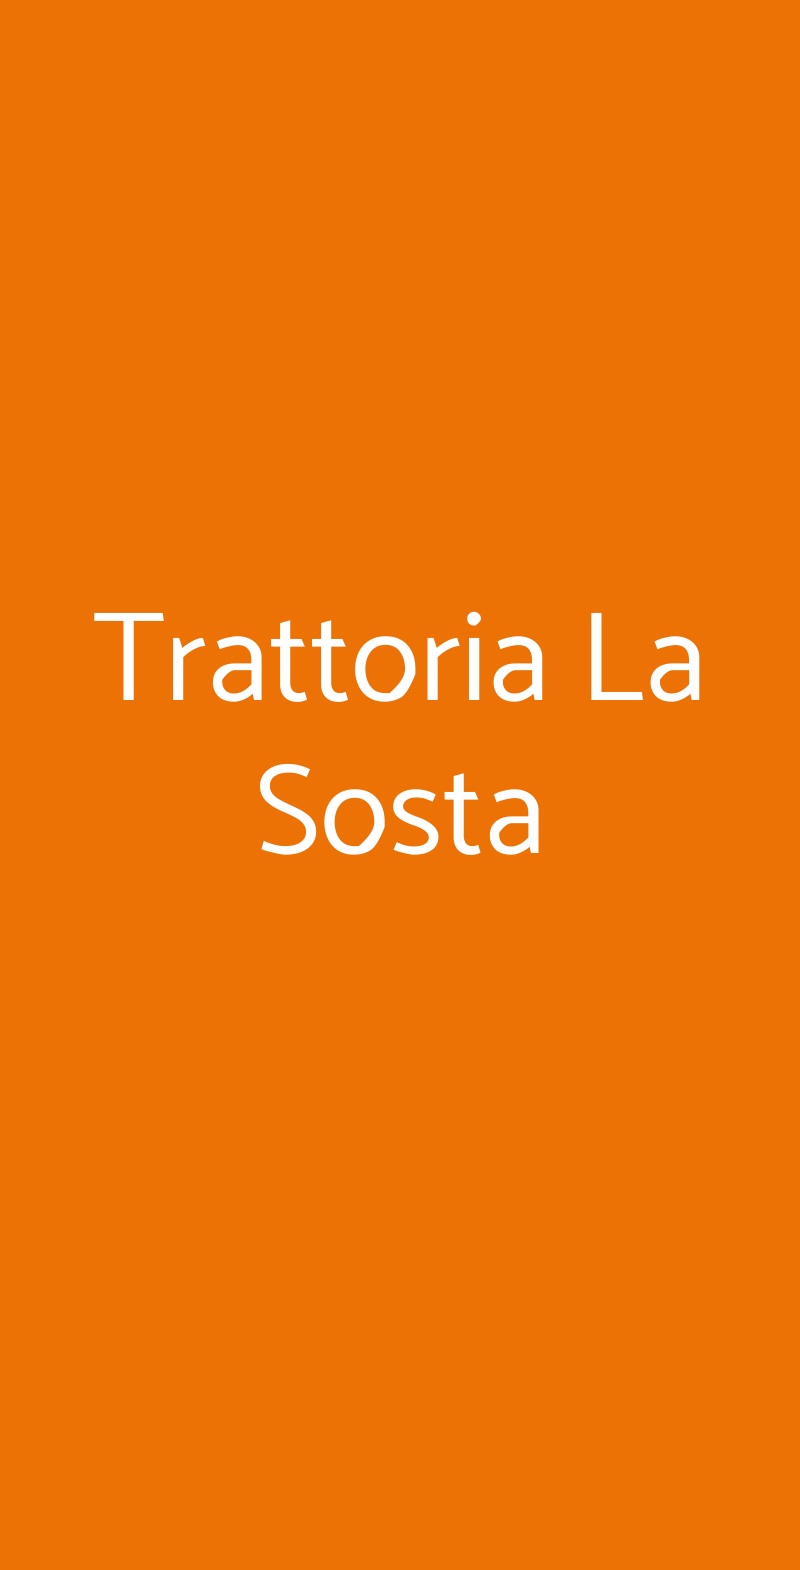 Trattoria La Sosta Bologna menù 1 pagina